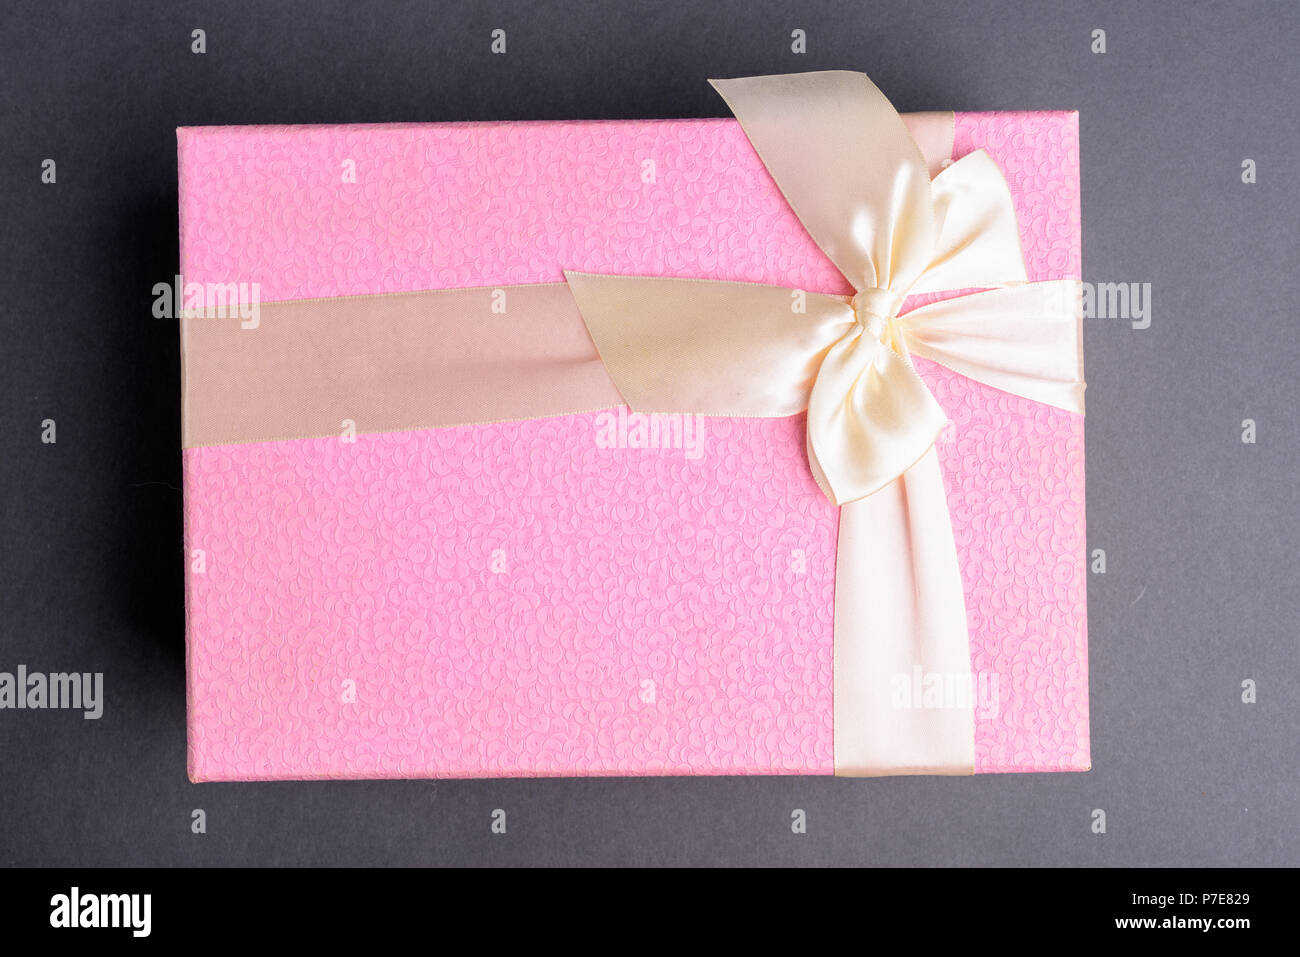 Studio Shot of boîte cadeau rose contre l'arrière-plan gris Banque D'Images